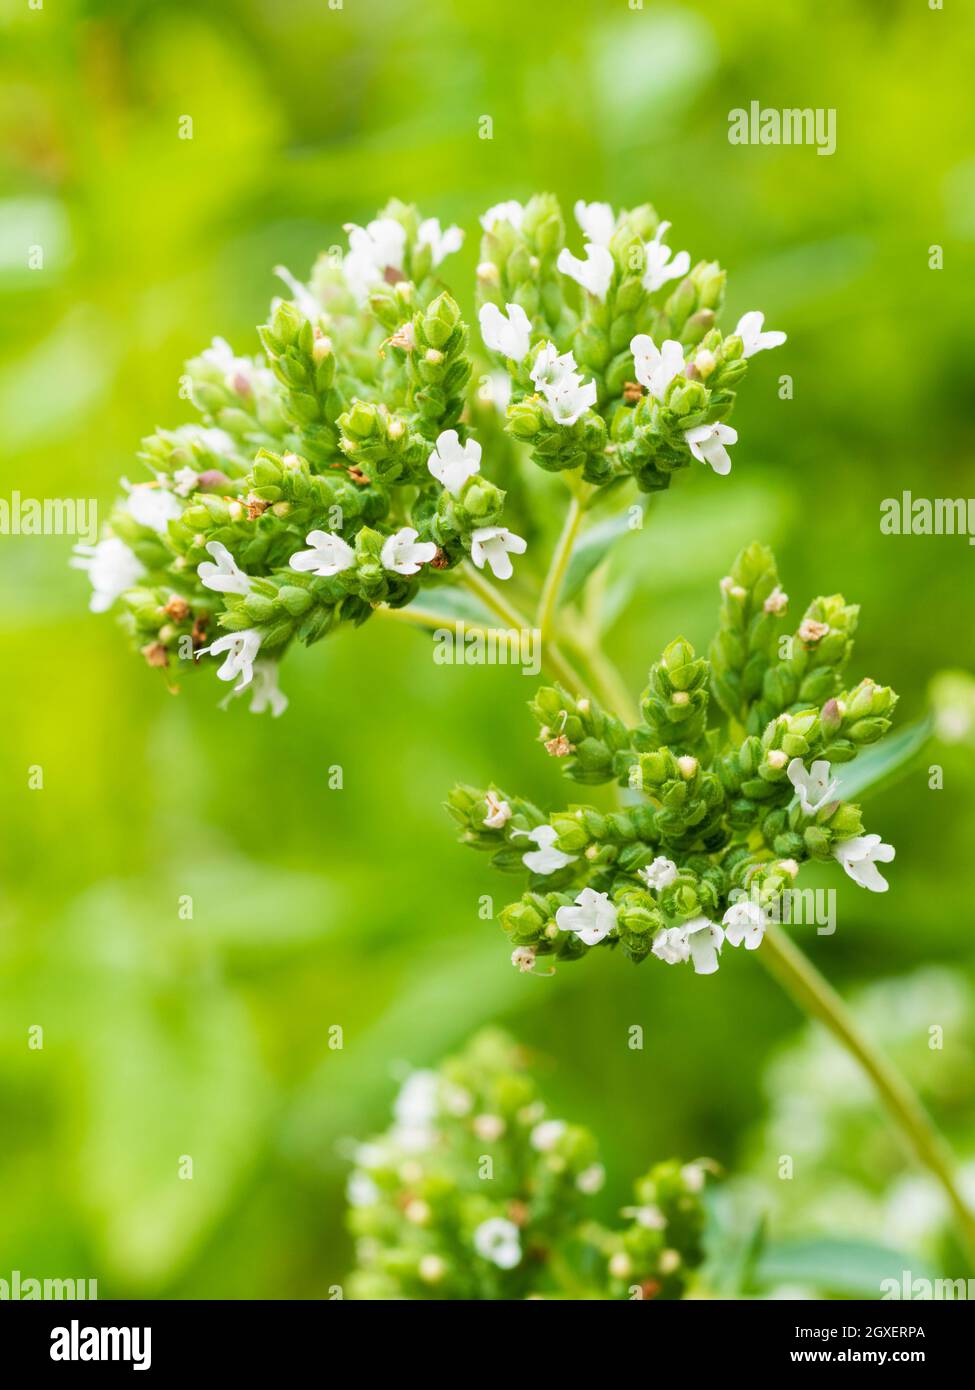 Têtes de fleurs de l'herbe culinaire, origan grec, Origanum vulgare subsp. Hirtum, parsemé de fleurs blanches Banque D'Images